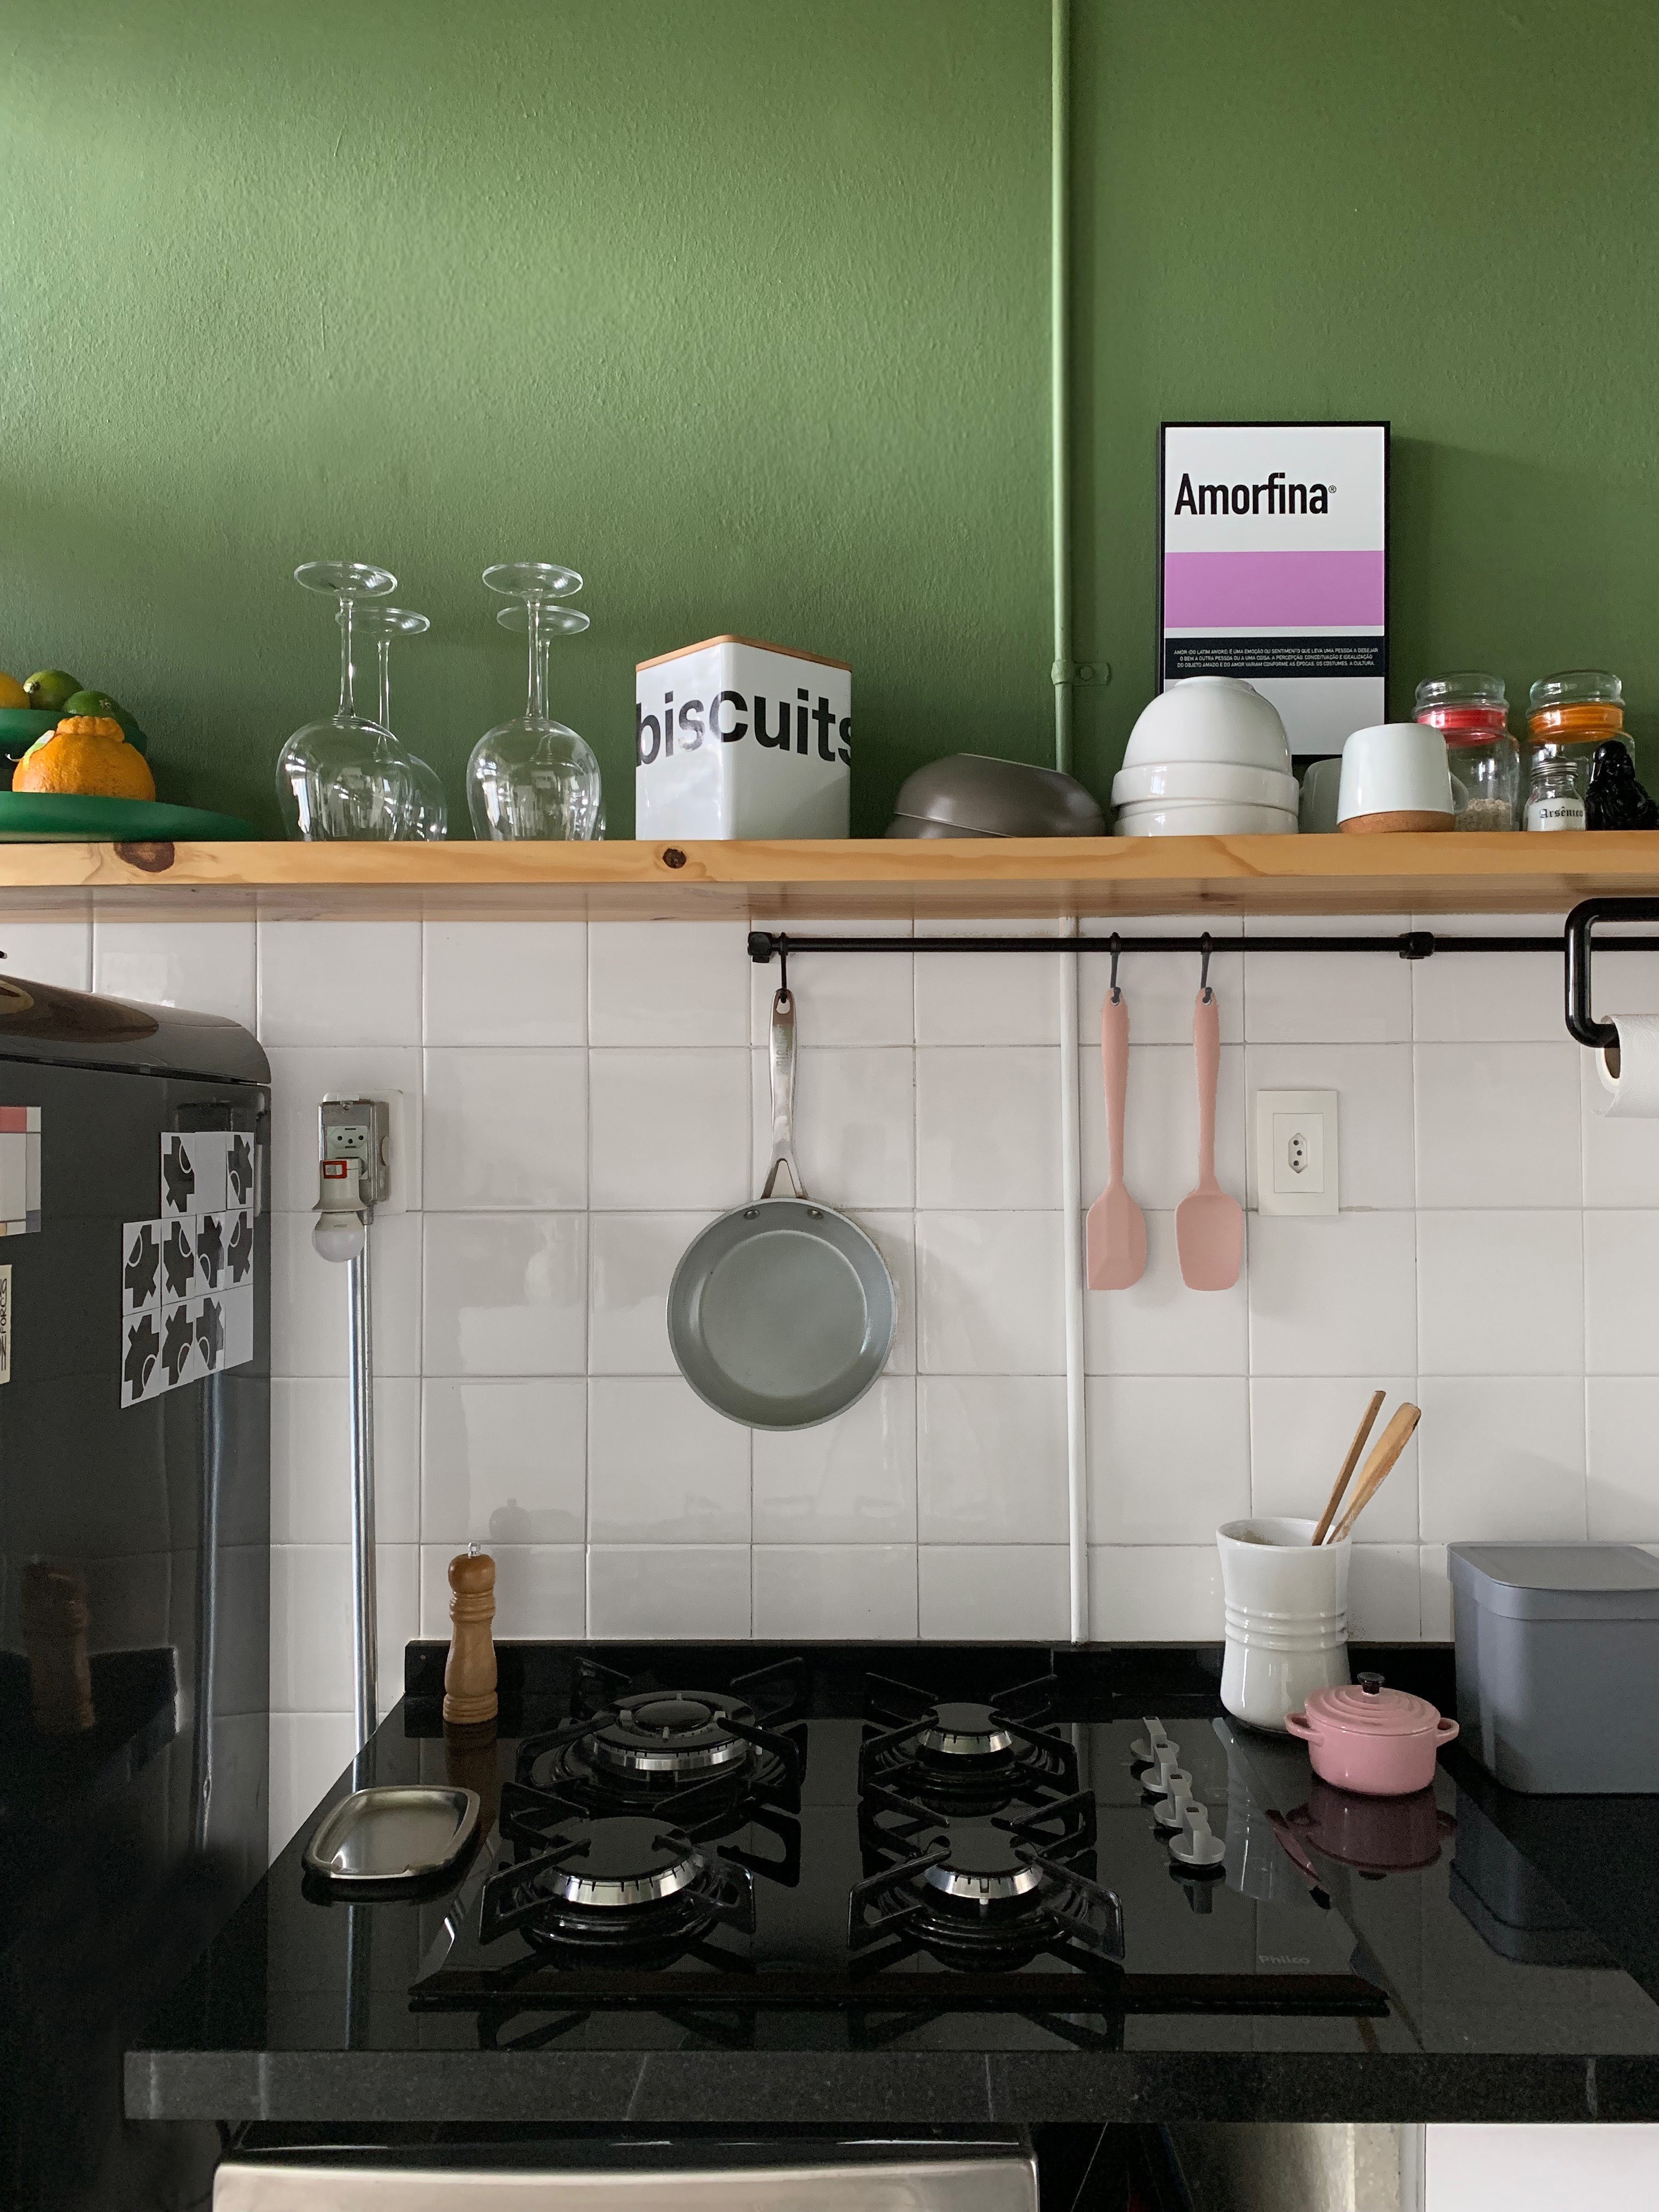 Décor do dia cozinha pequena com meia parede pintada (Foto: Divulgação)